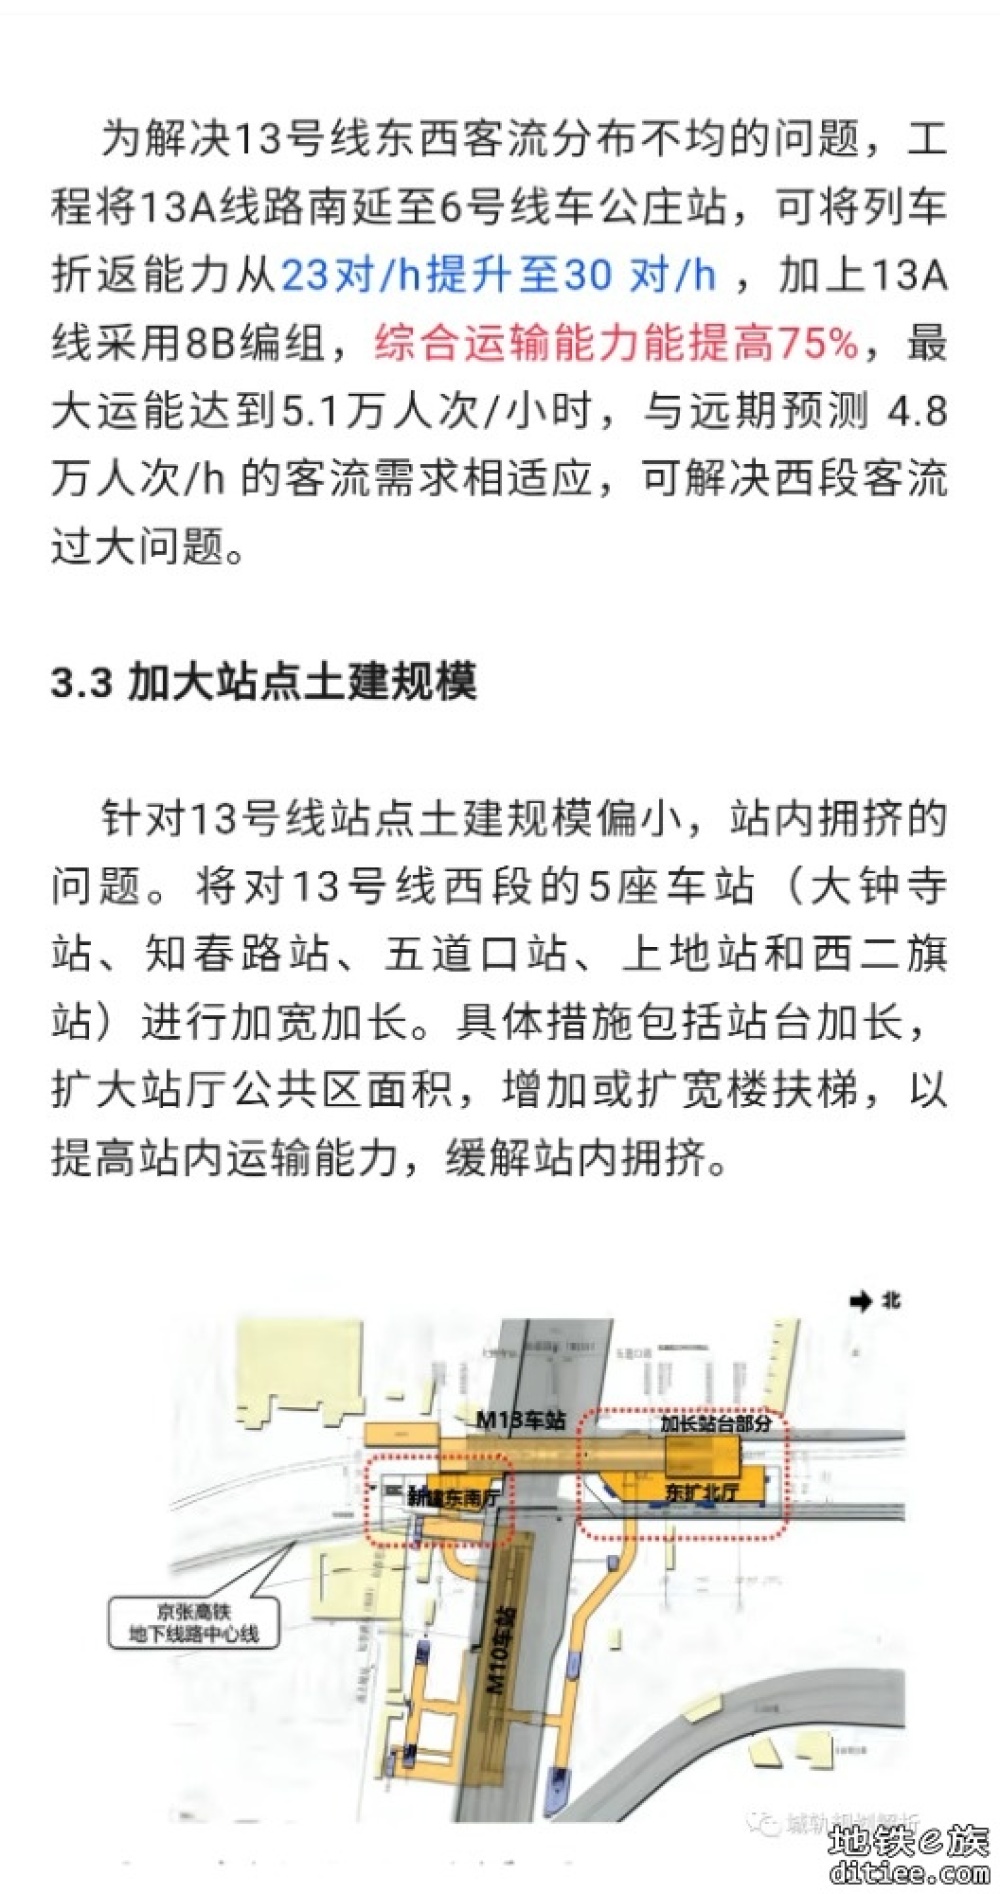 北京地铁13号线扩能提升：破解北京北部交通难题，畅通出行之路